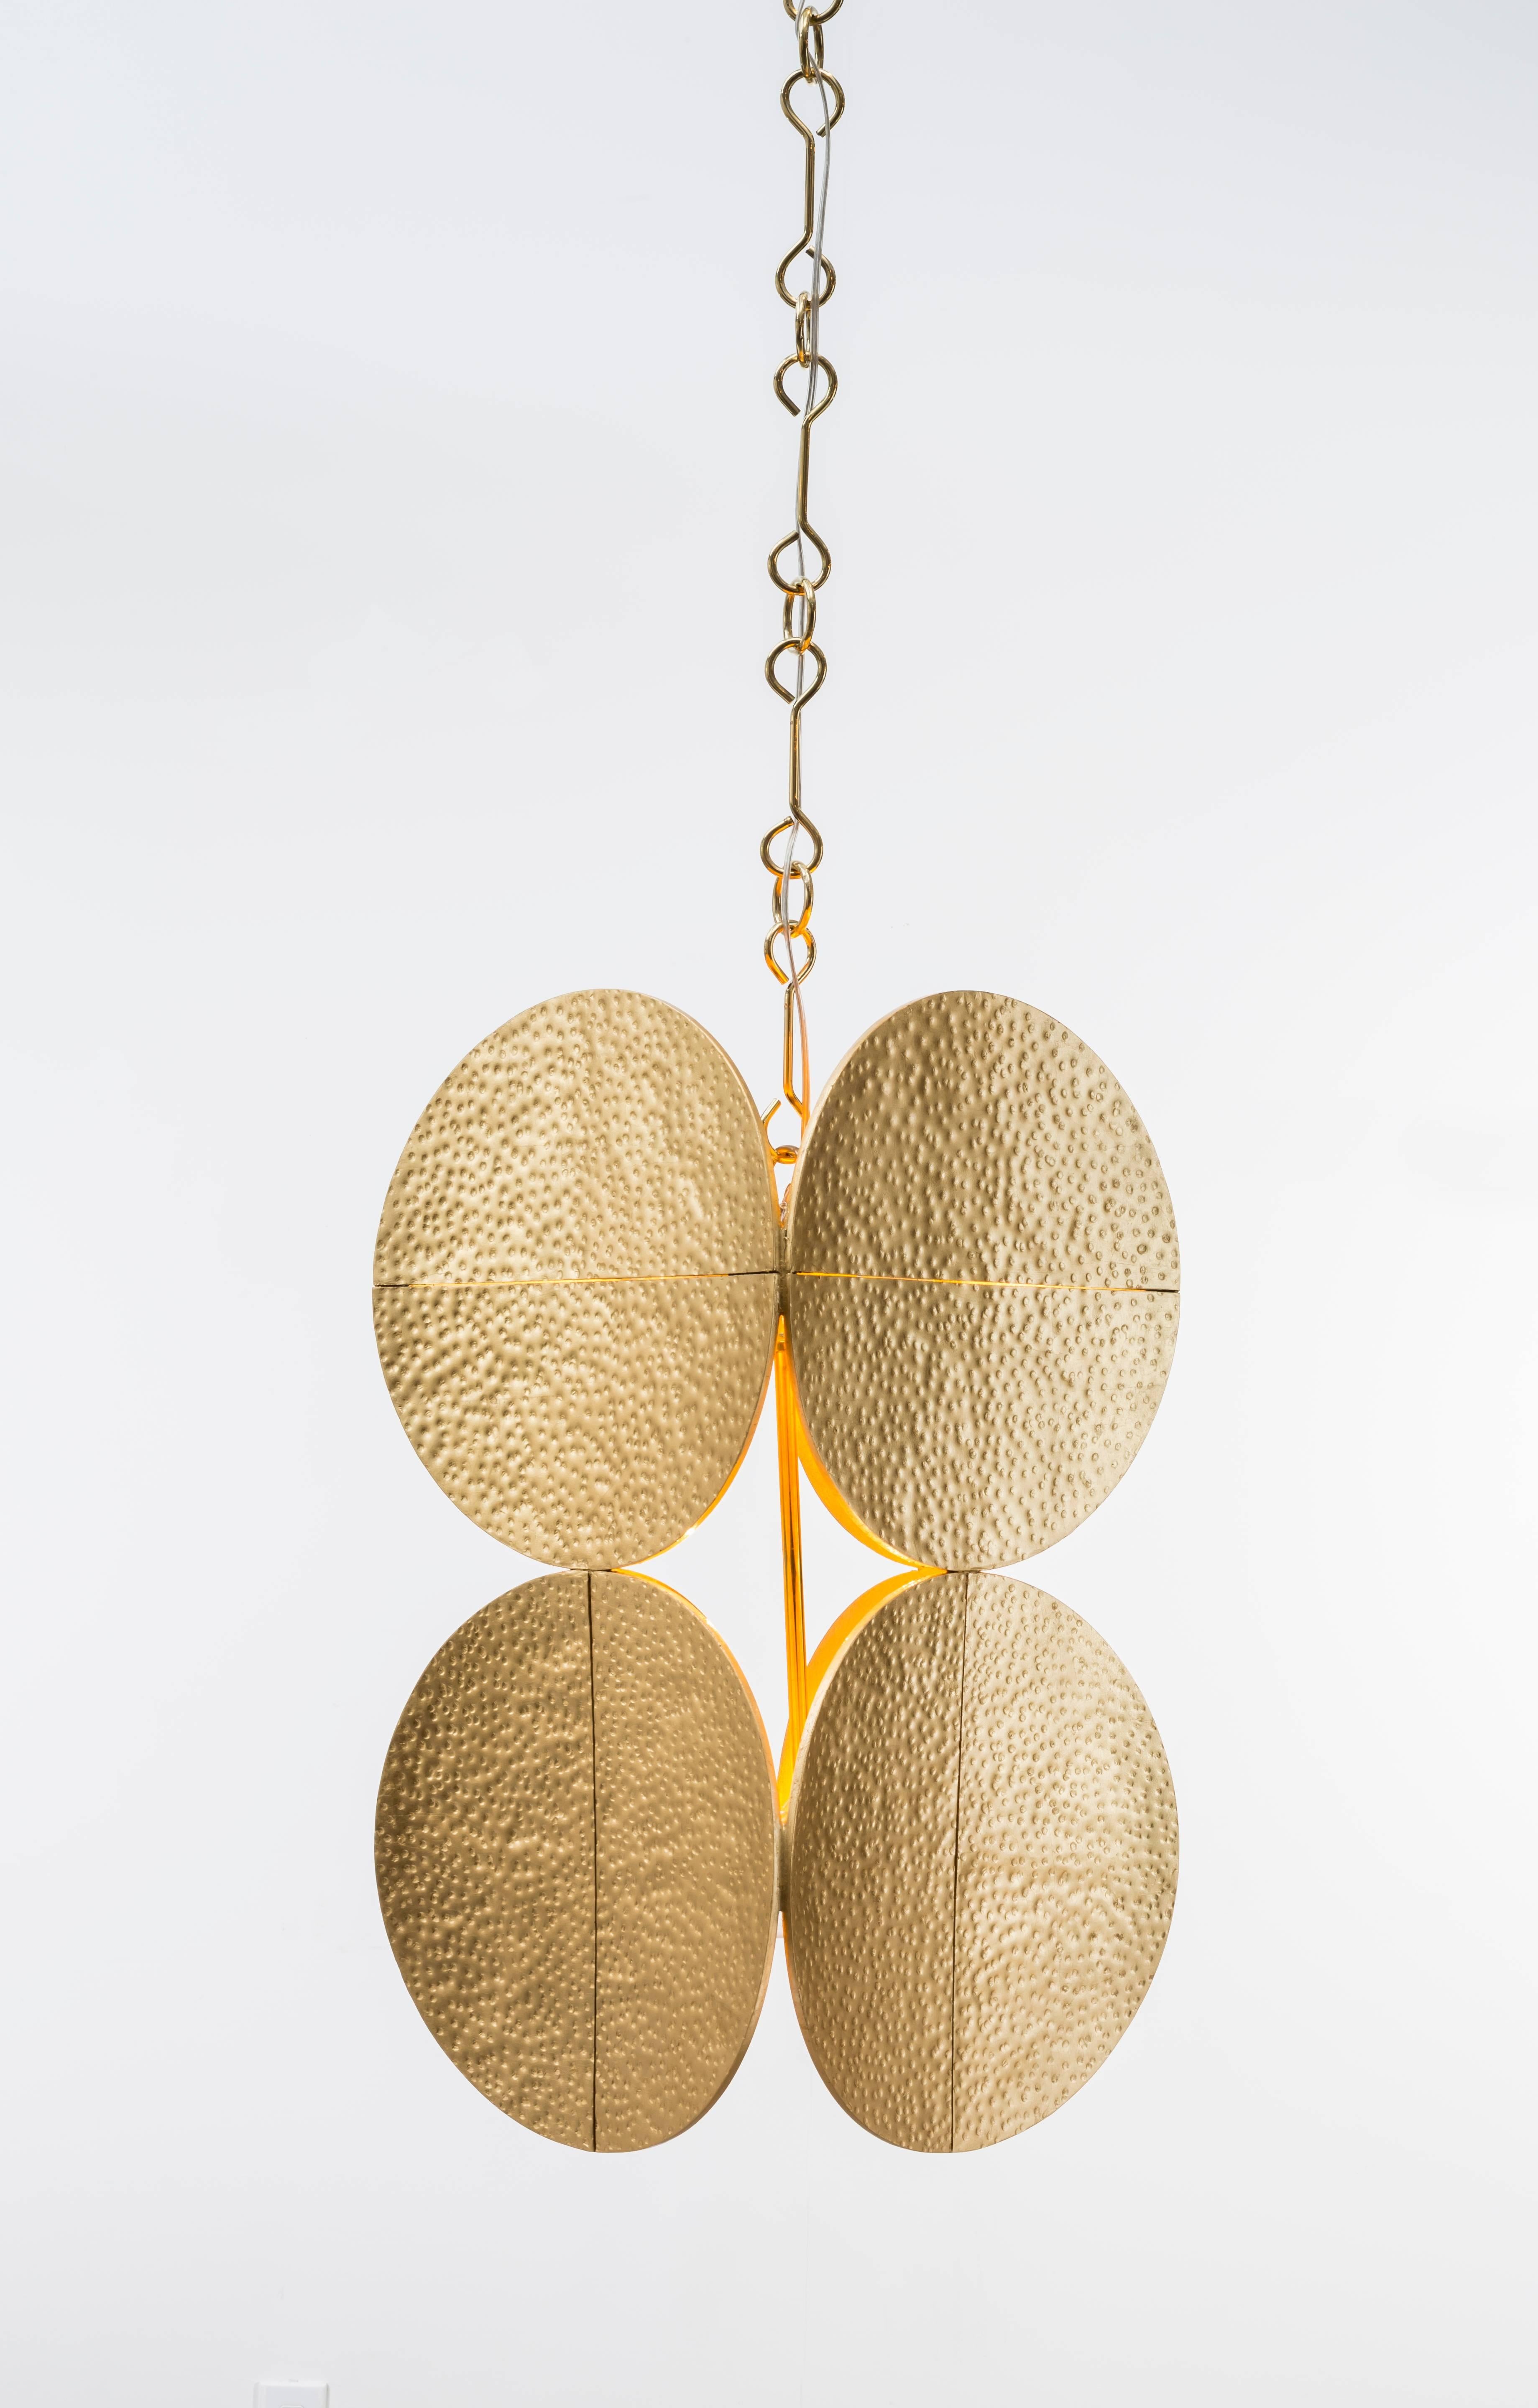 HALO PENDANT - Moderner Blattgold-Kronleuchter mit Messingkette

Der Halo-Kronleuchter ist ein atemberaubendes Stück funktionaler Kunst, das jedem Interieur einen Hauch von Eleganz und Raffinesse verleiht. An einer dekorativen Messingkette hängen